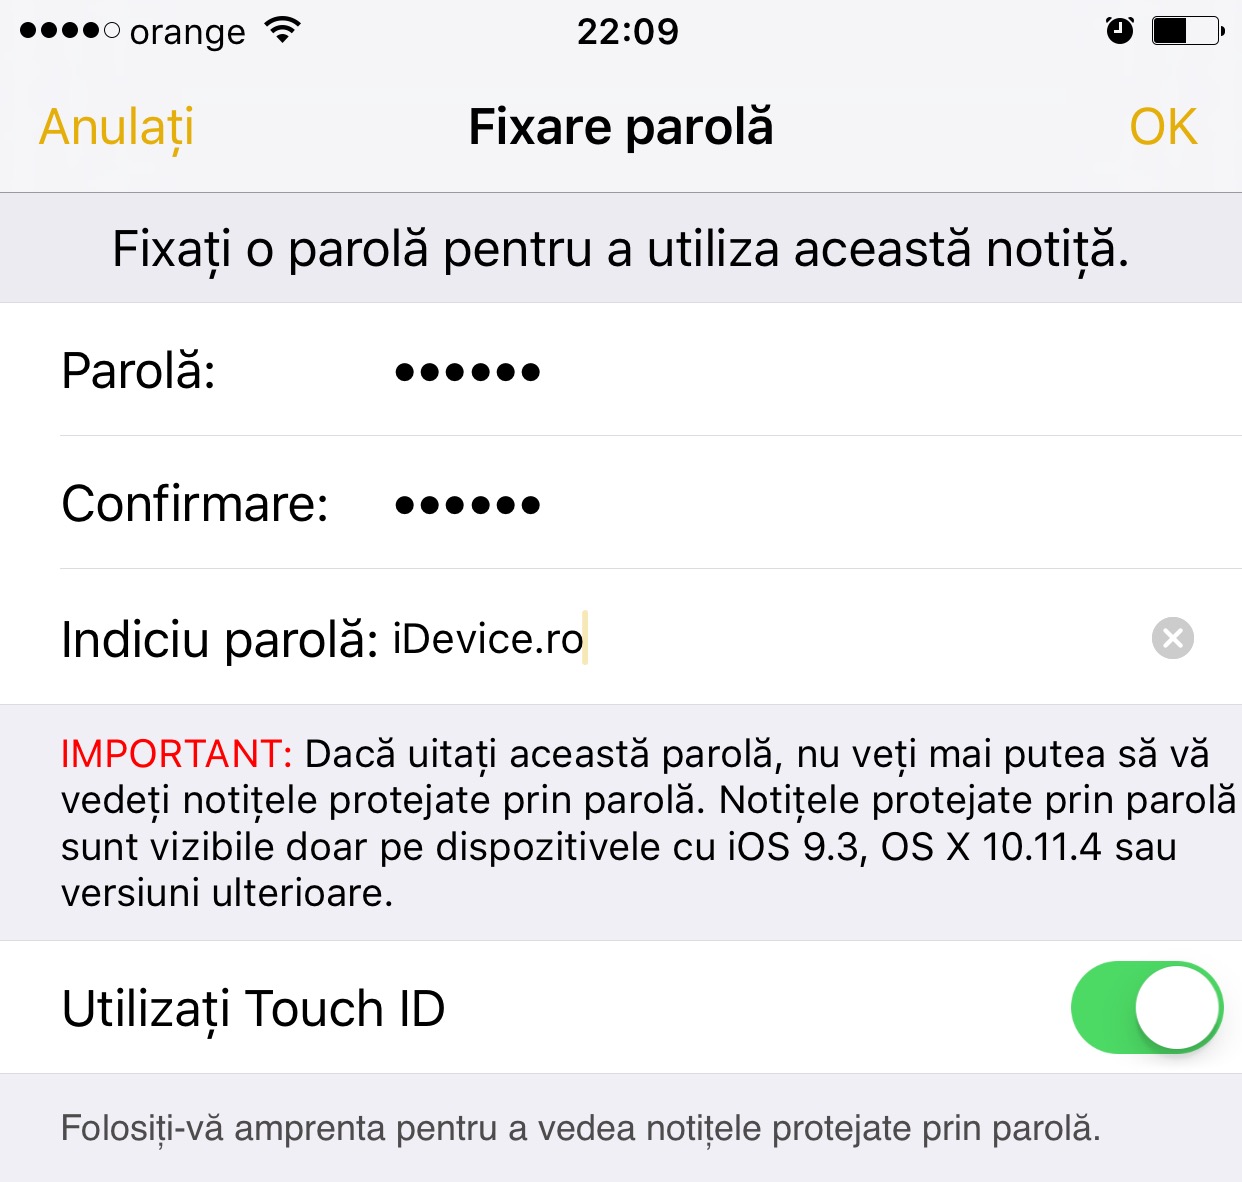 Anmärkningar om lösenordsskydd för iOS 9.3